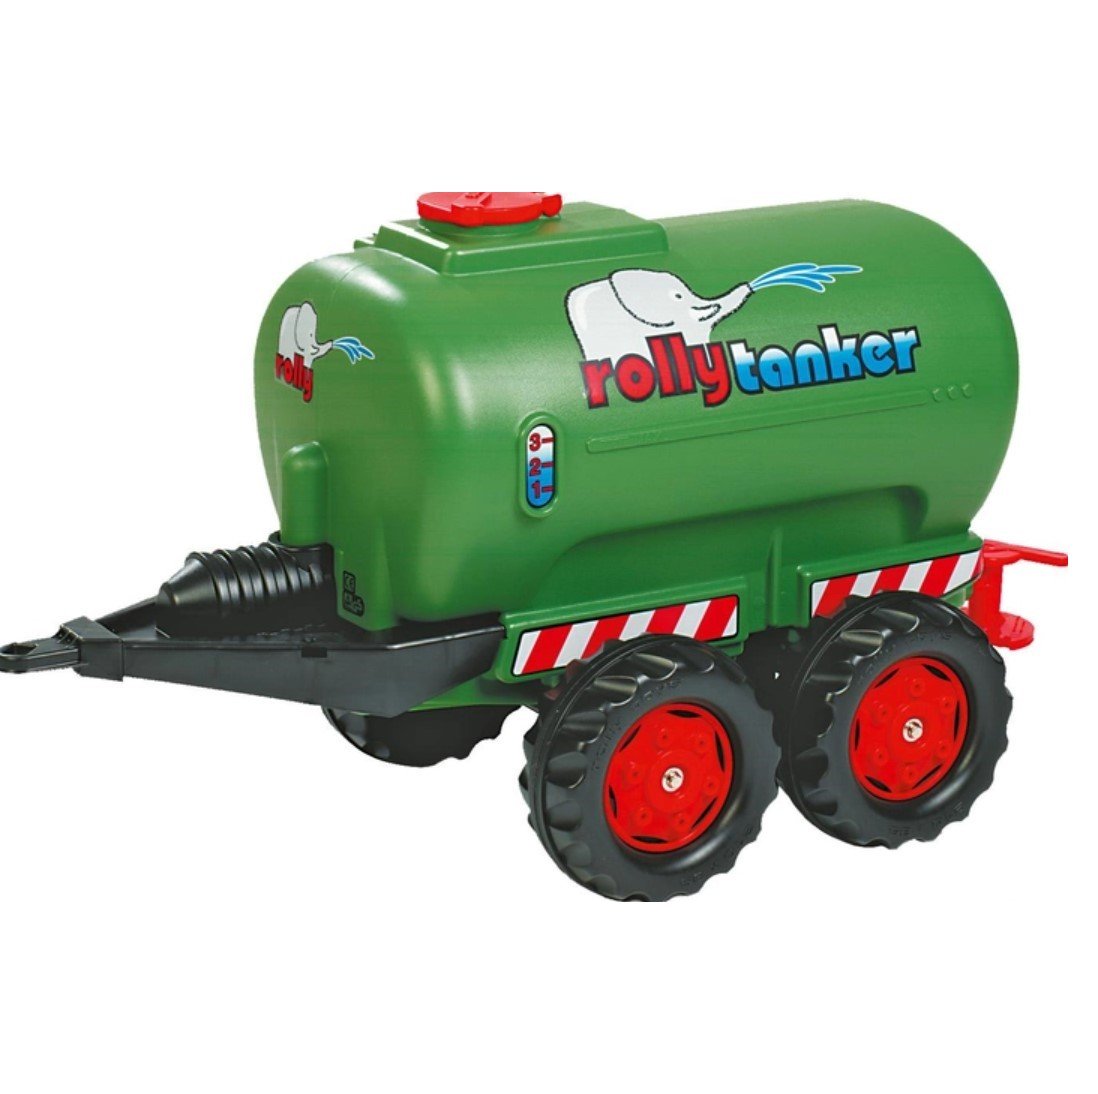 Цистерна з помпою Rolly Toys rollyTanker, зелений (122653) - фото 1